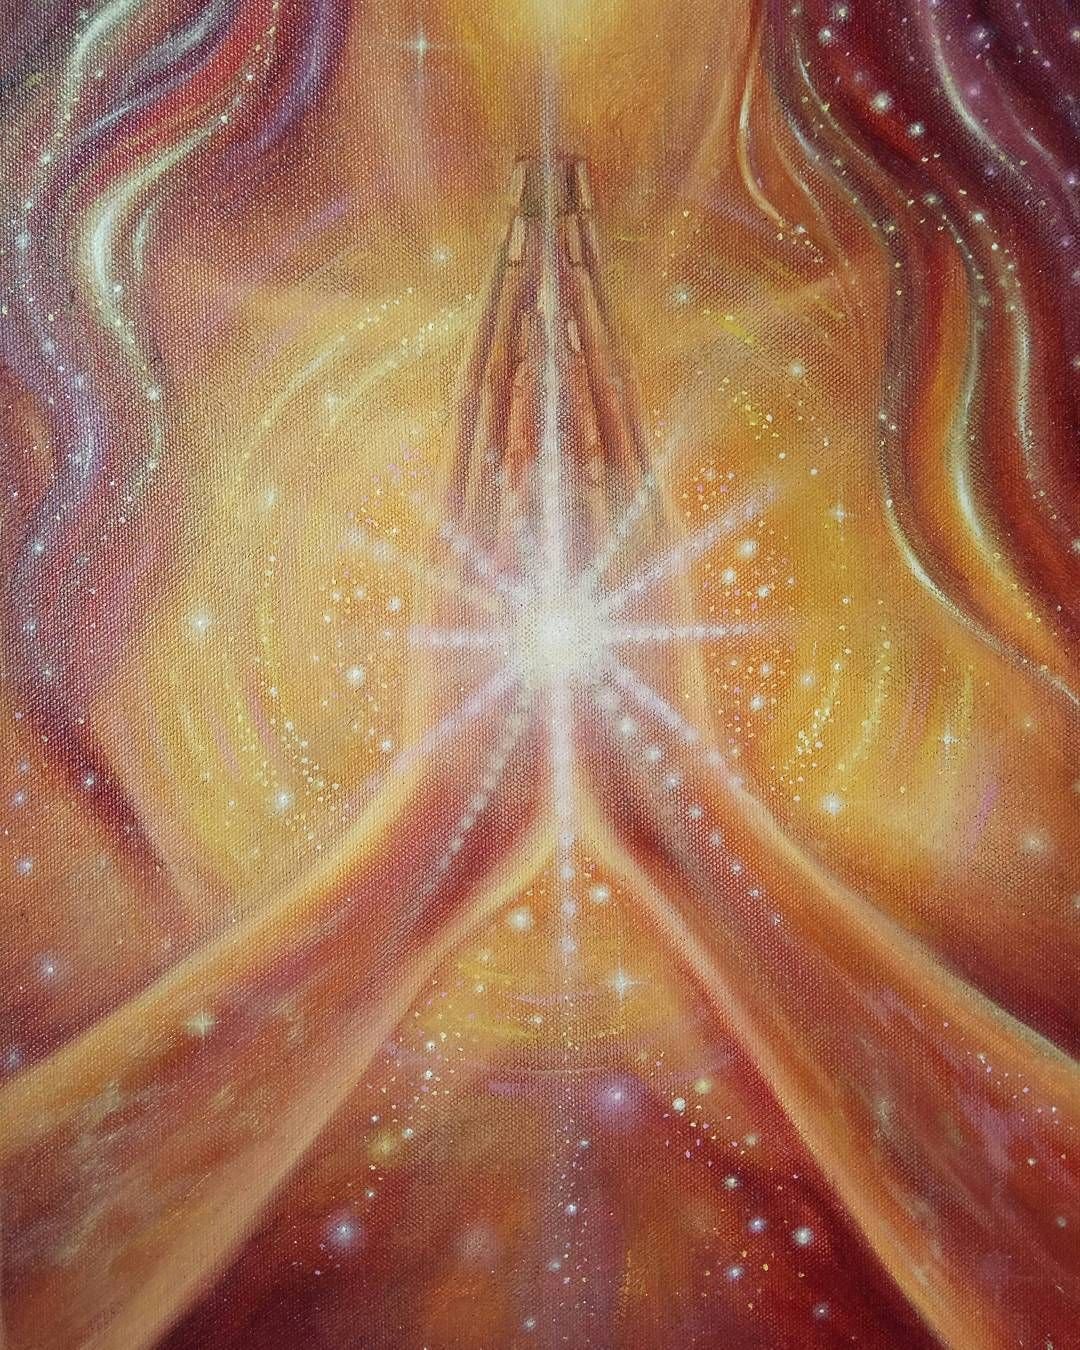 Цветок счастья звезда. Энергетические картины Елены Саппа. Изобилие Вселенной. Свет внутри человека. Вселенское изобилие.